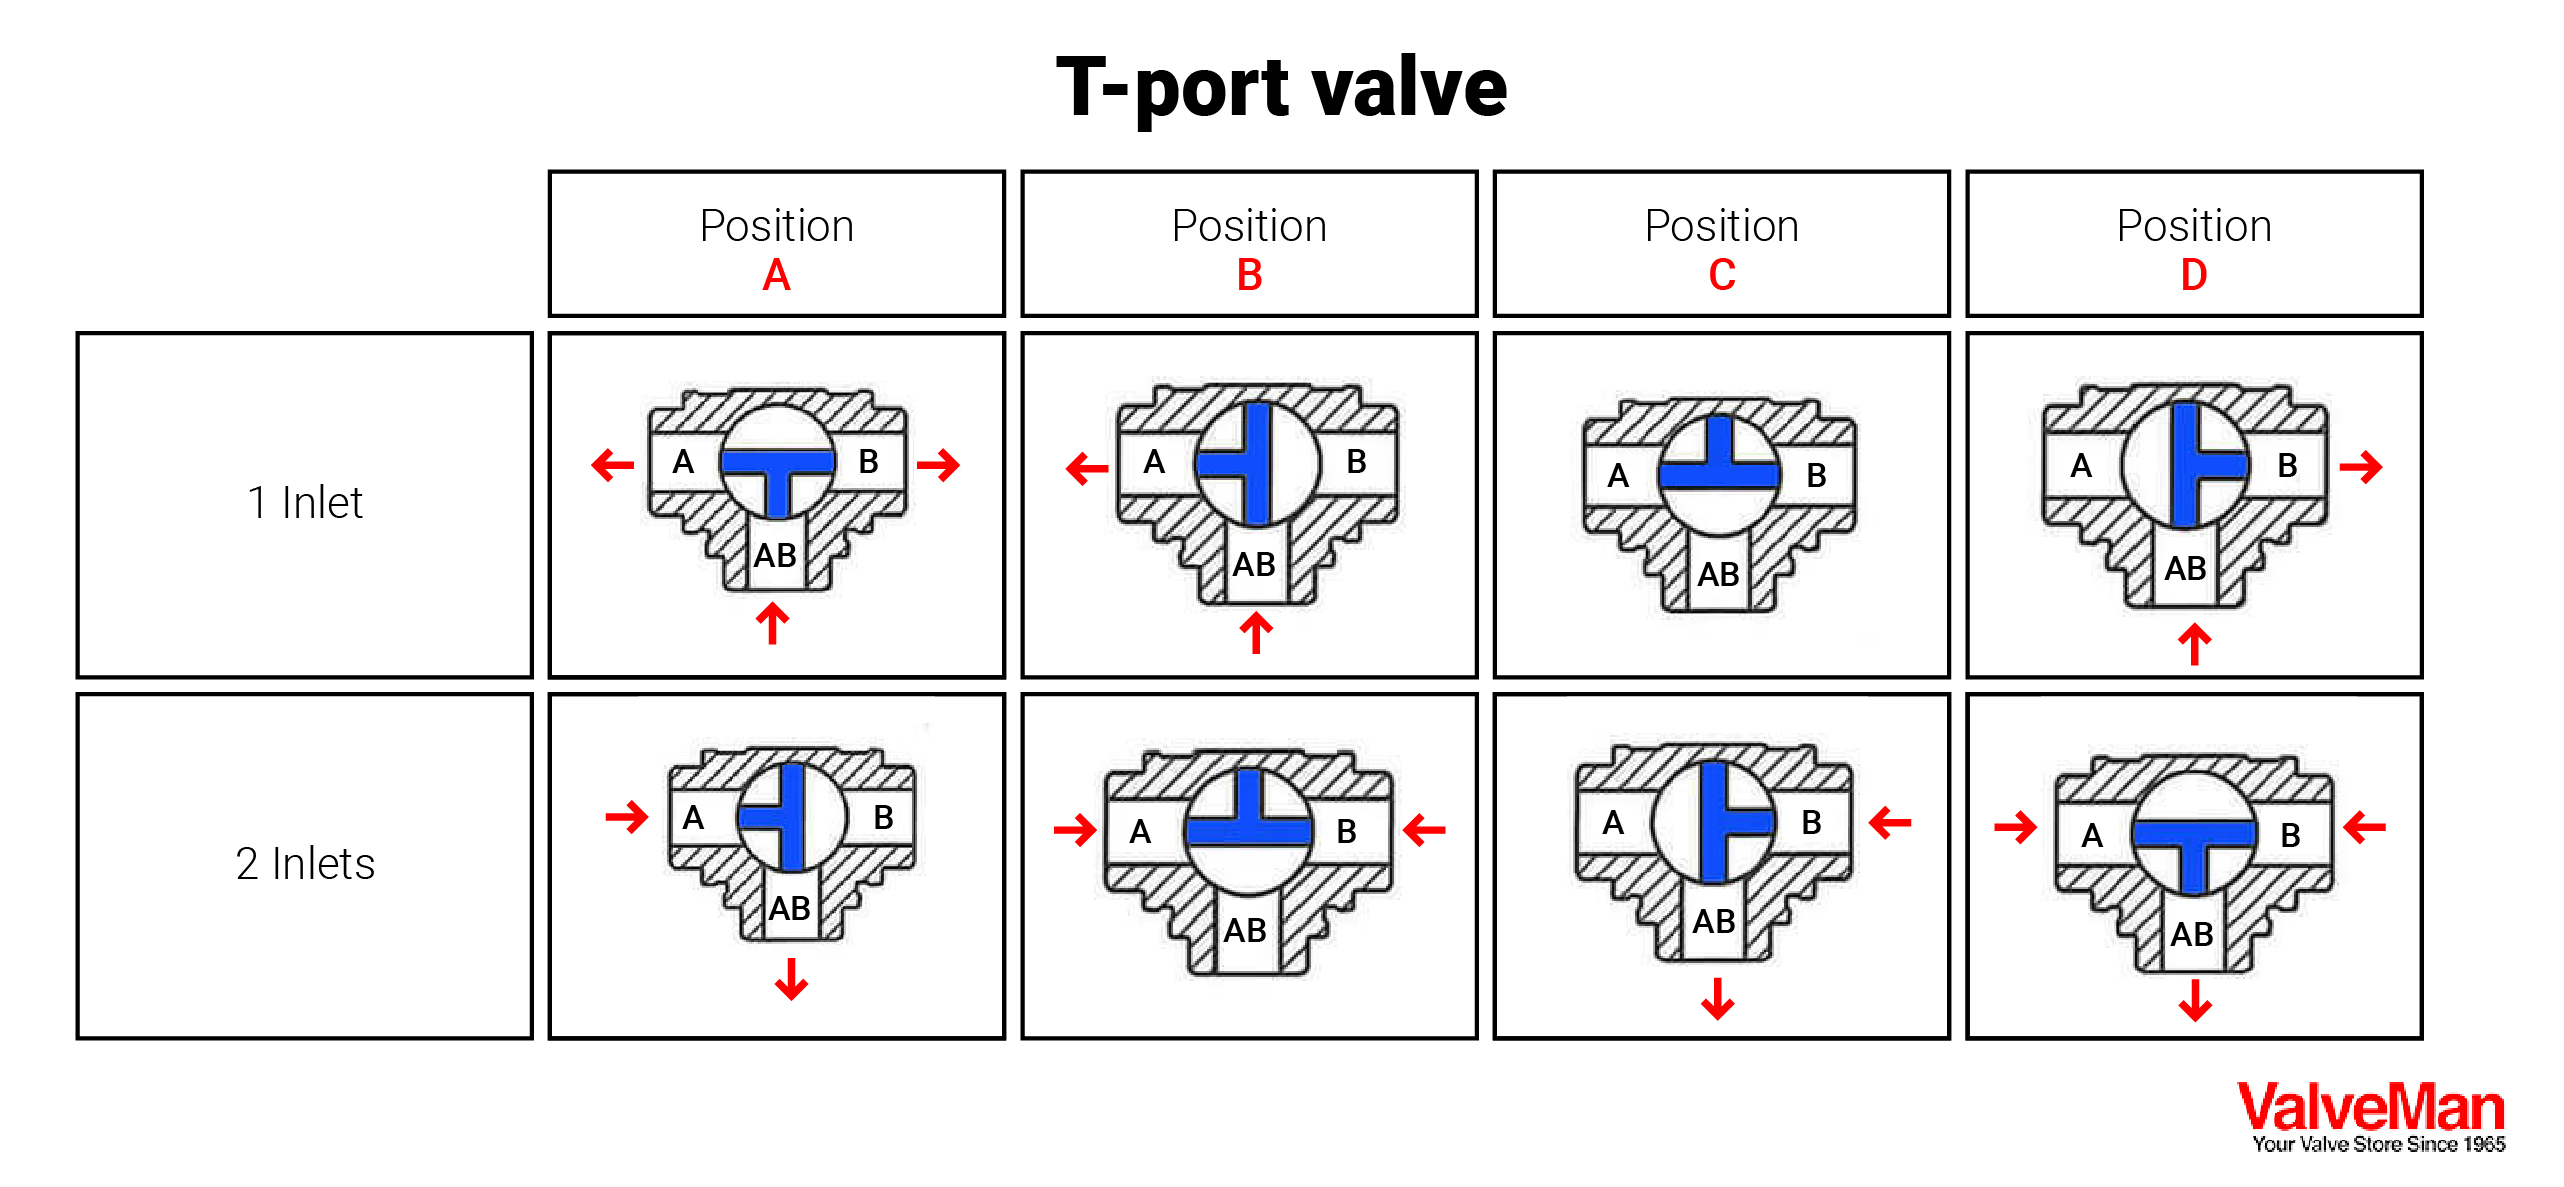 T-port Valve Positions